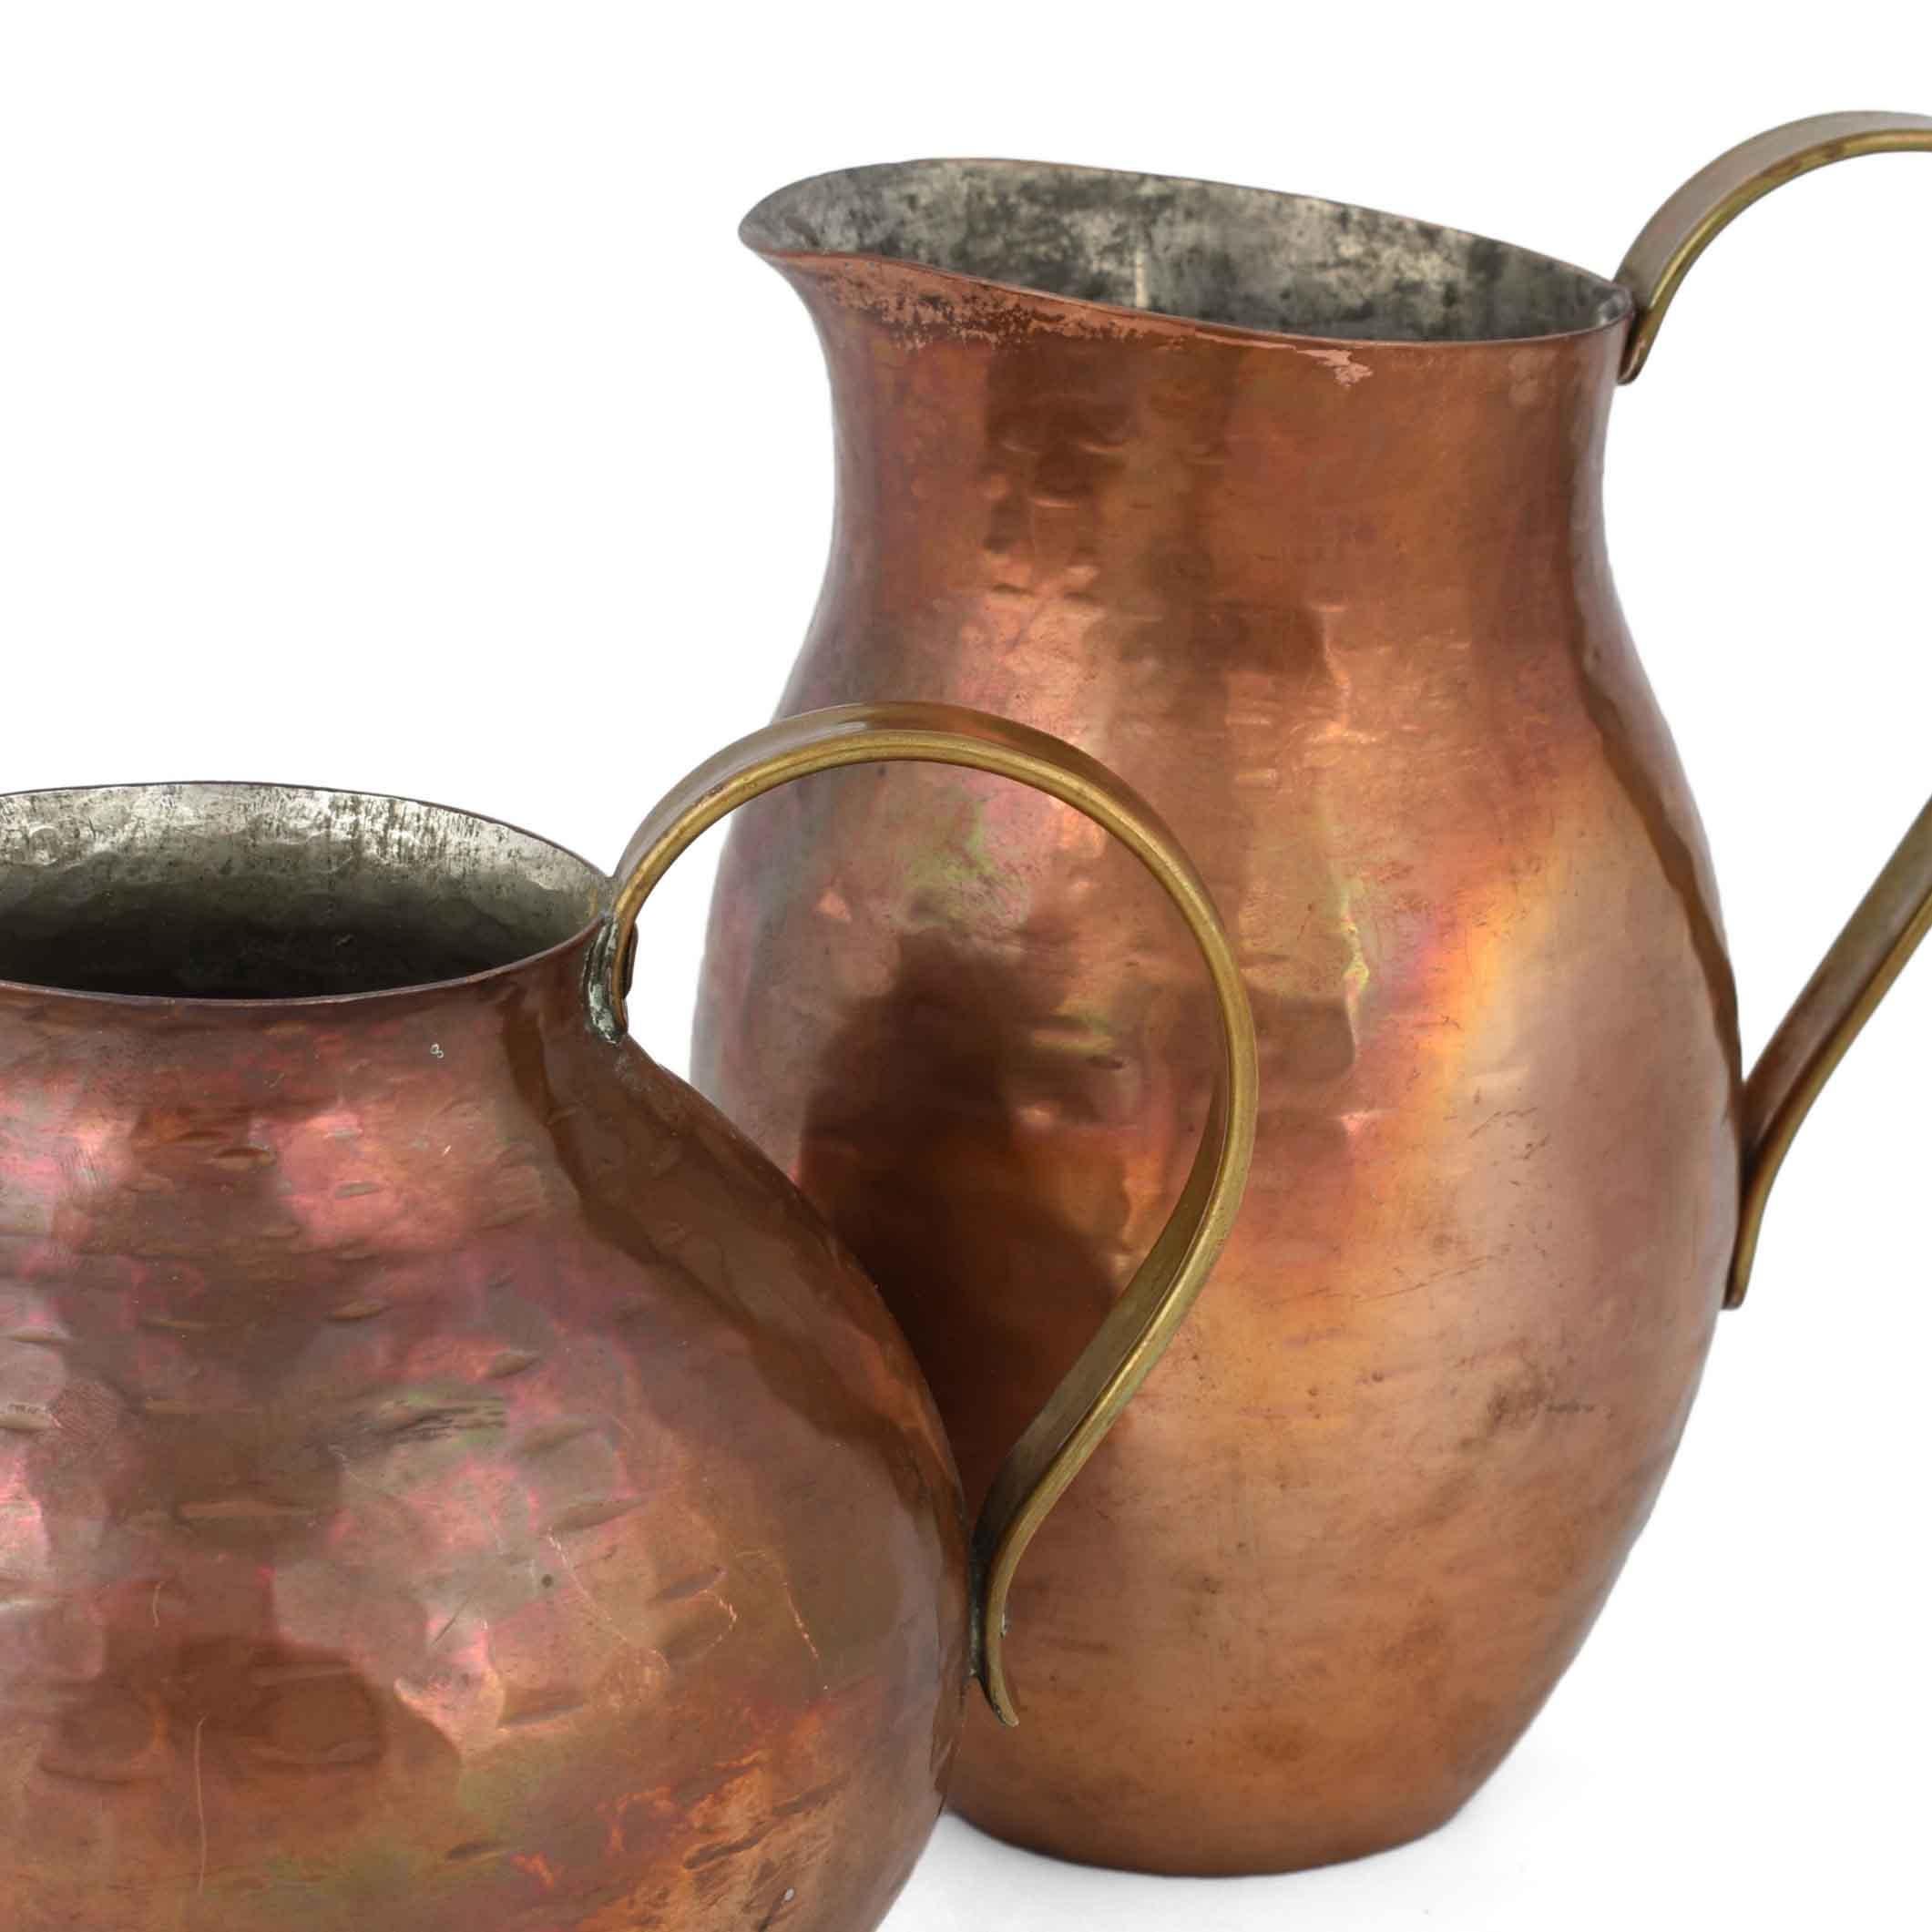 Zwei Kupferkrüge sind ein originelles dekoratives Objektpaar aus dem zweiten Drittel des 20. Jahrhunderts.

Original Kupfer, das Set besteht aus: einem hohen Kupferkrug (H. 16 cm) und einem kleineren Kupferkrug (H. 12,5 cm).

Realisiert von Harald